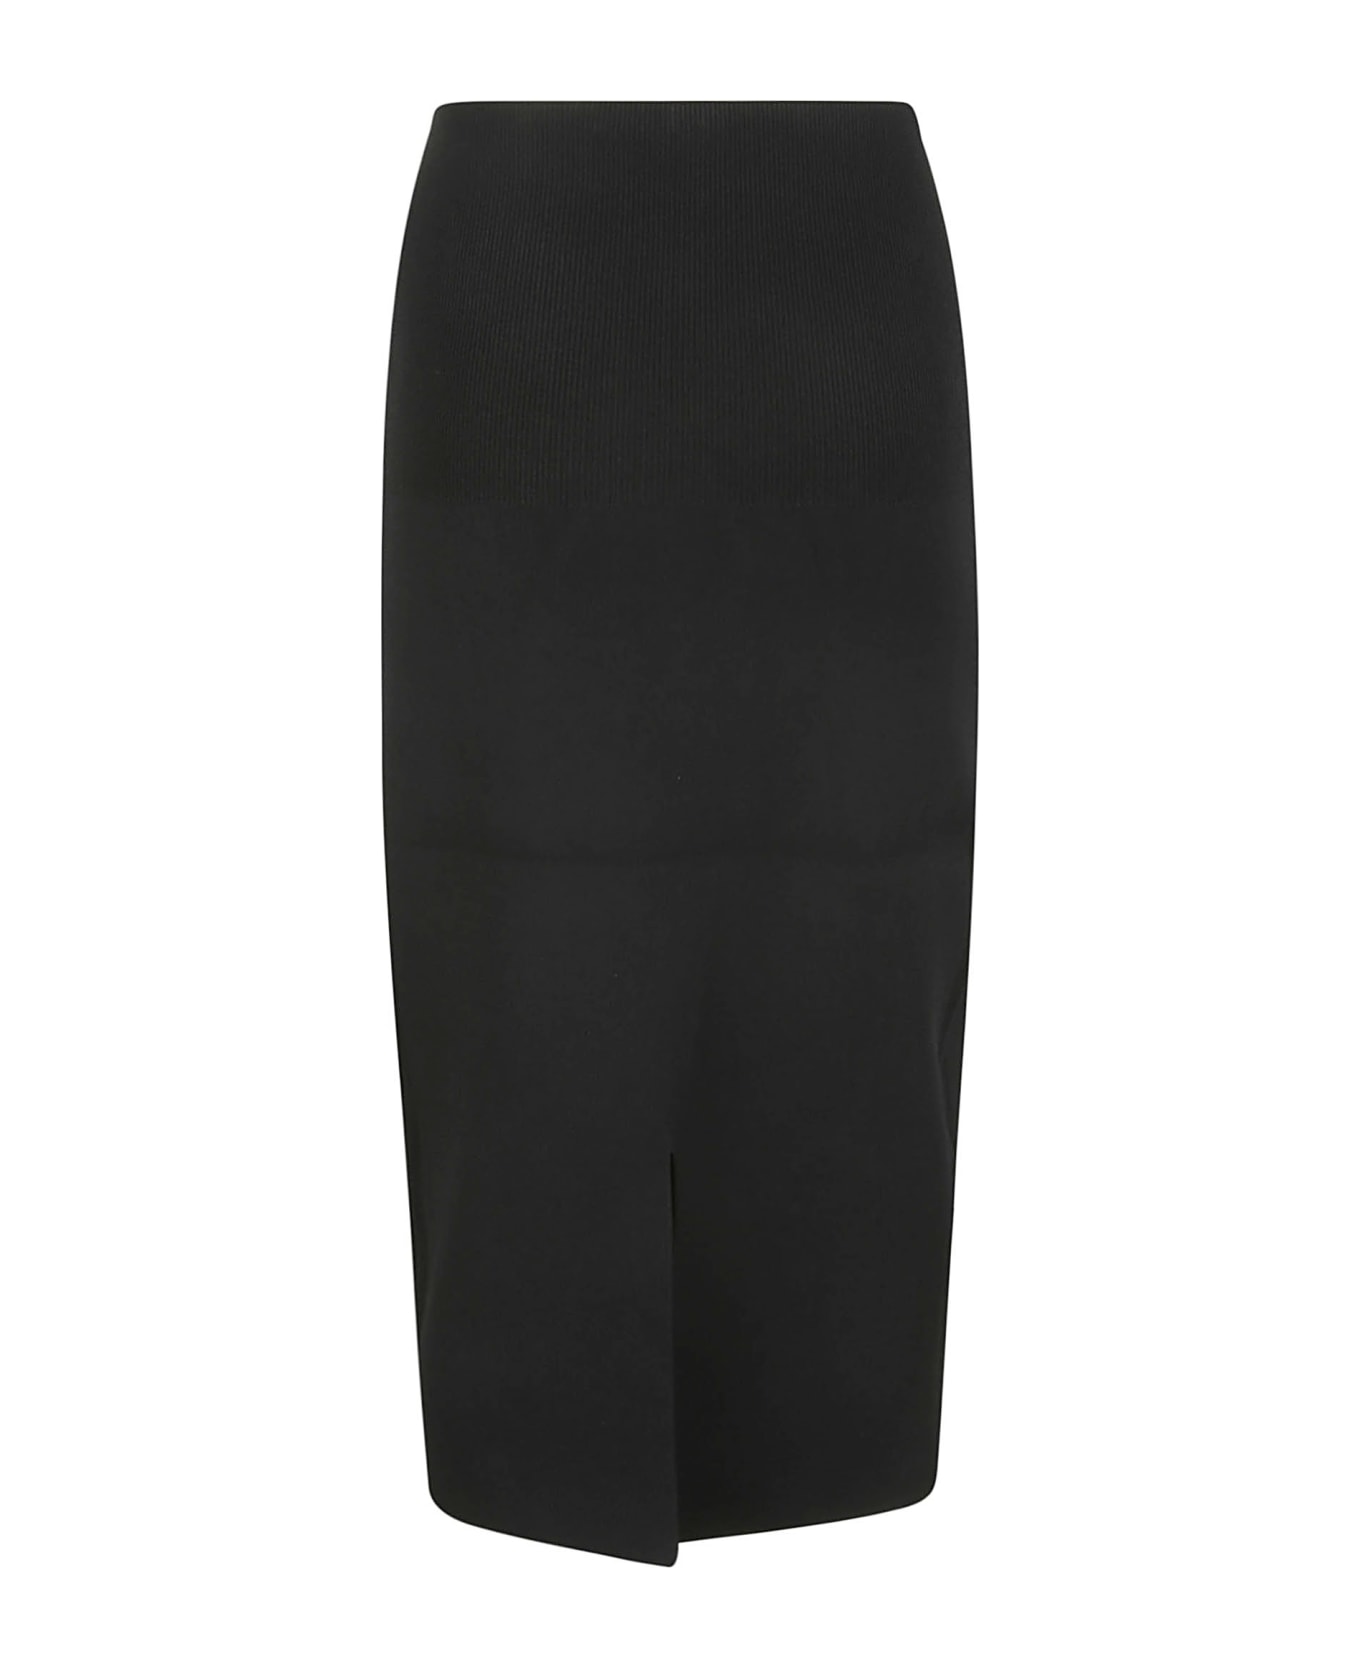 Victoria Beckham Fitted Skirt - 1 スカート